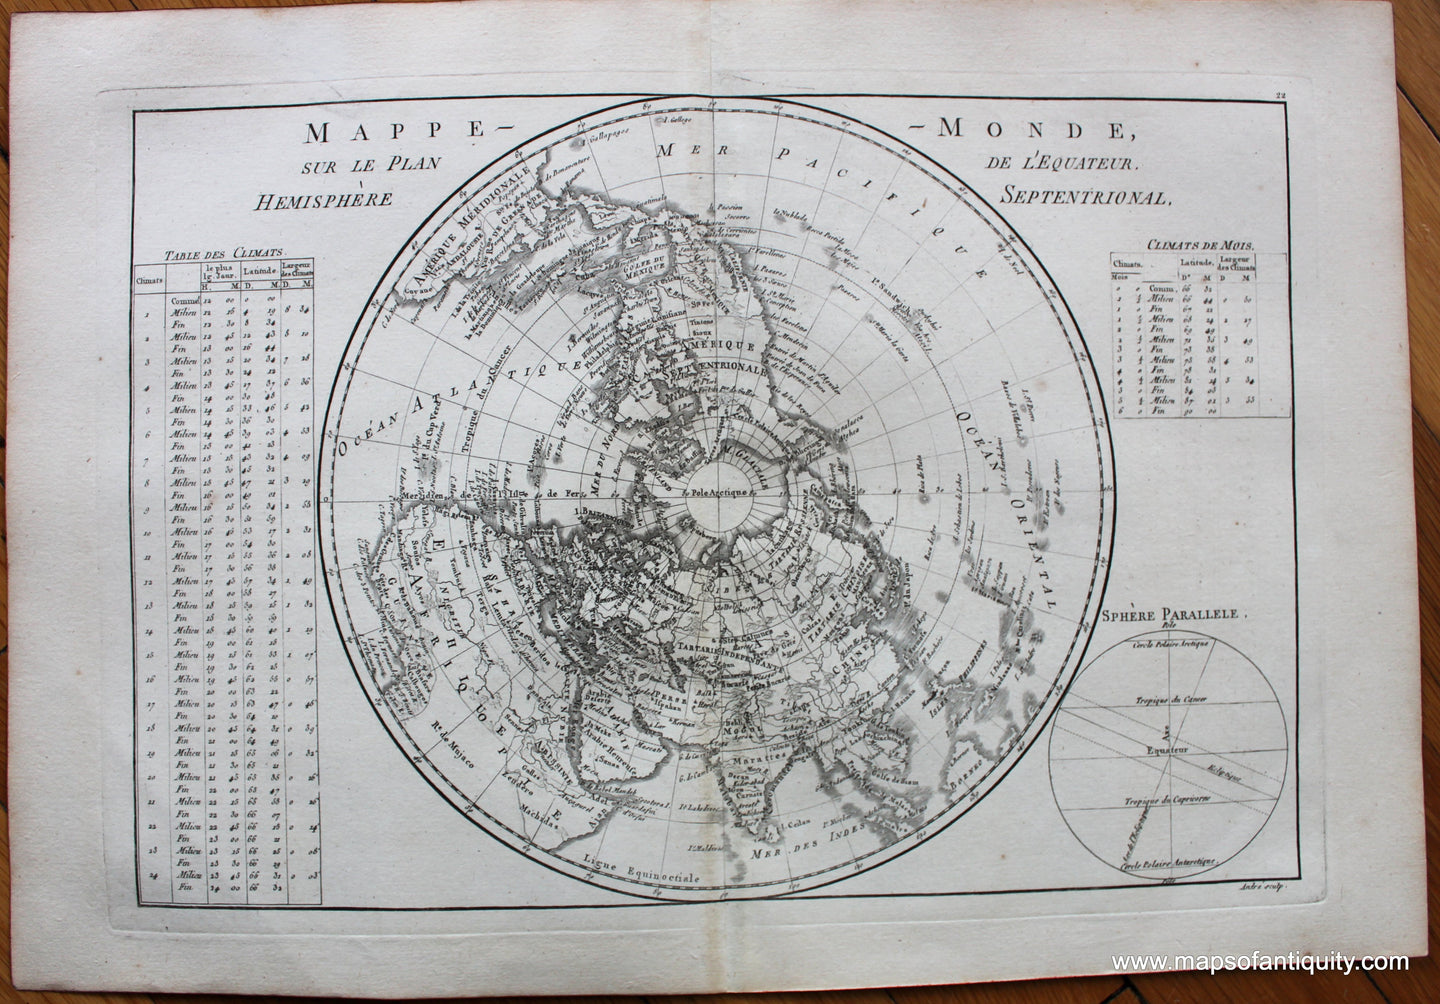 1787 - Mappe-Monde sur Le Plan de l'Equateur. Hemisphere Septentrionale. - Antique Map